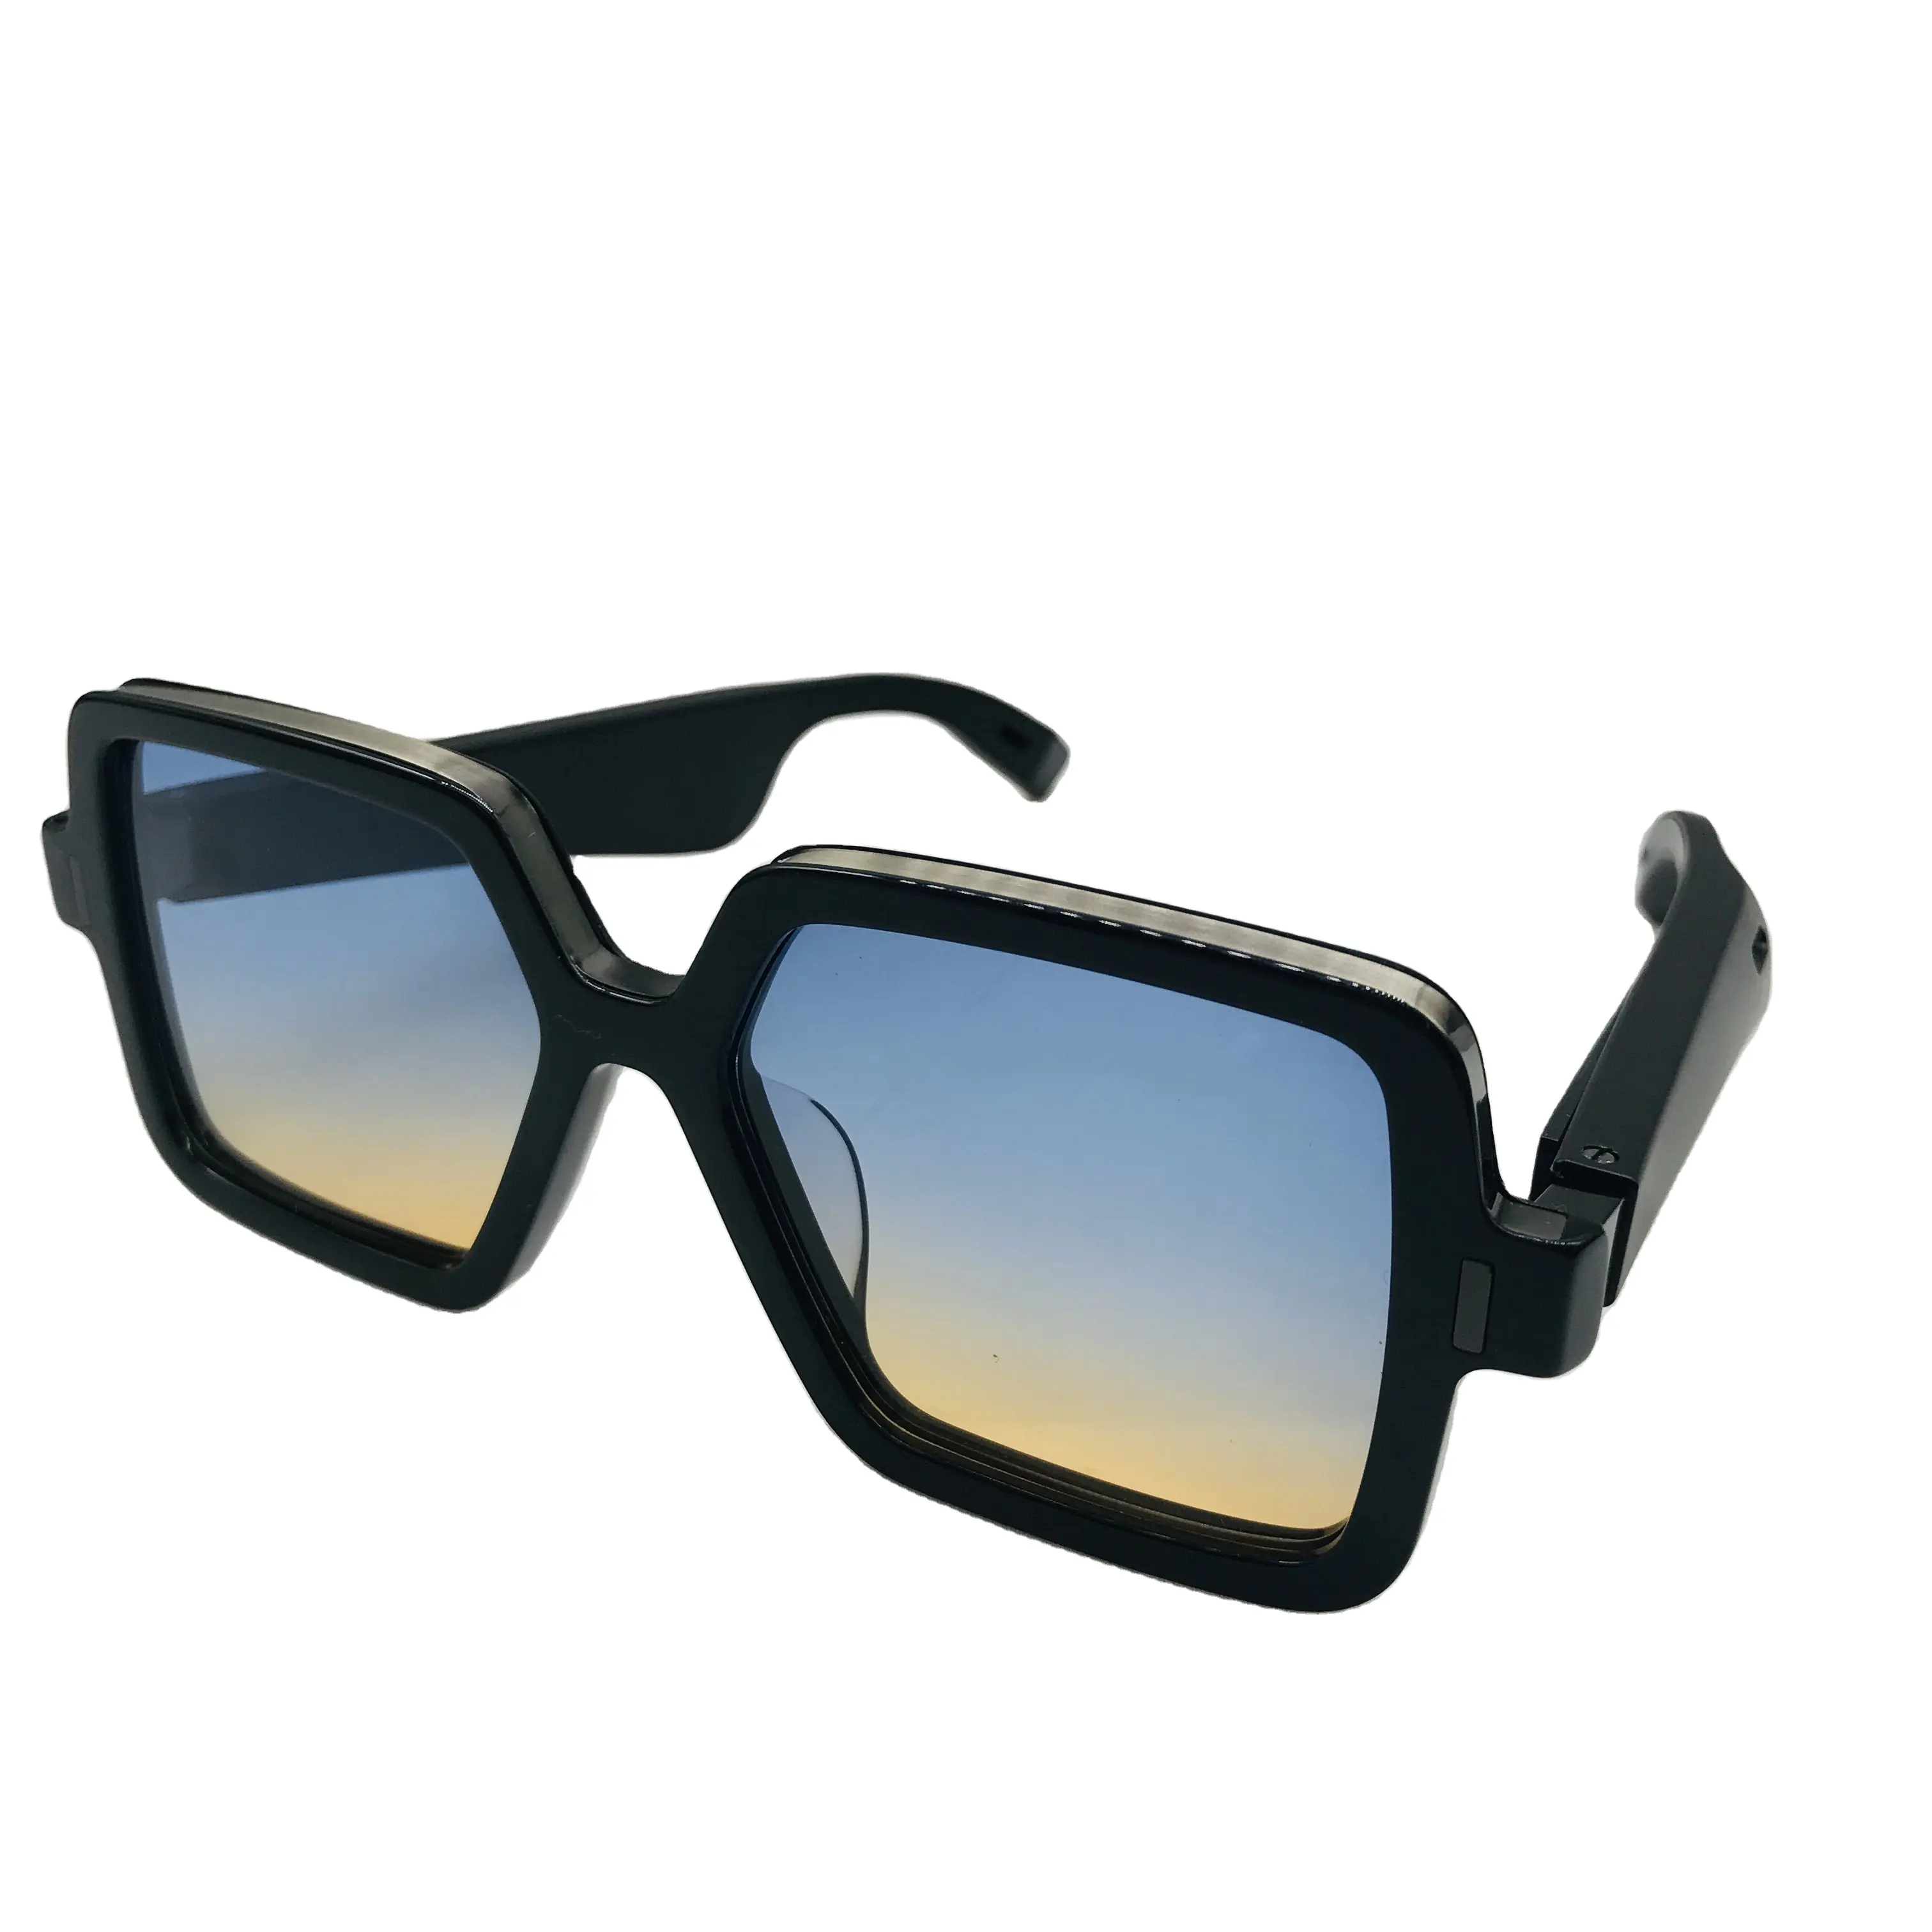 Glasses BT TR 90 Glasses OEM High Quality umschaltbar ausrüstung schwarz technologie kostenloser proben smart gläser